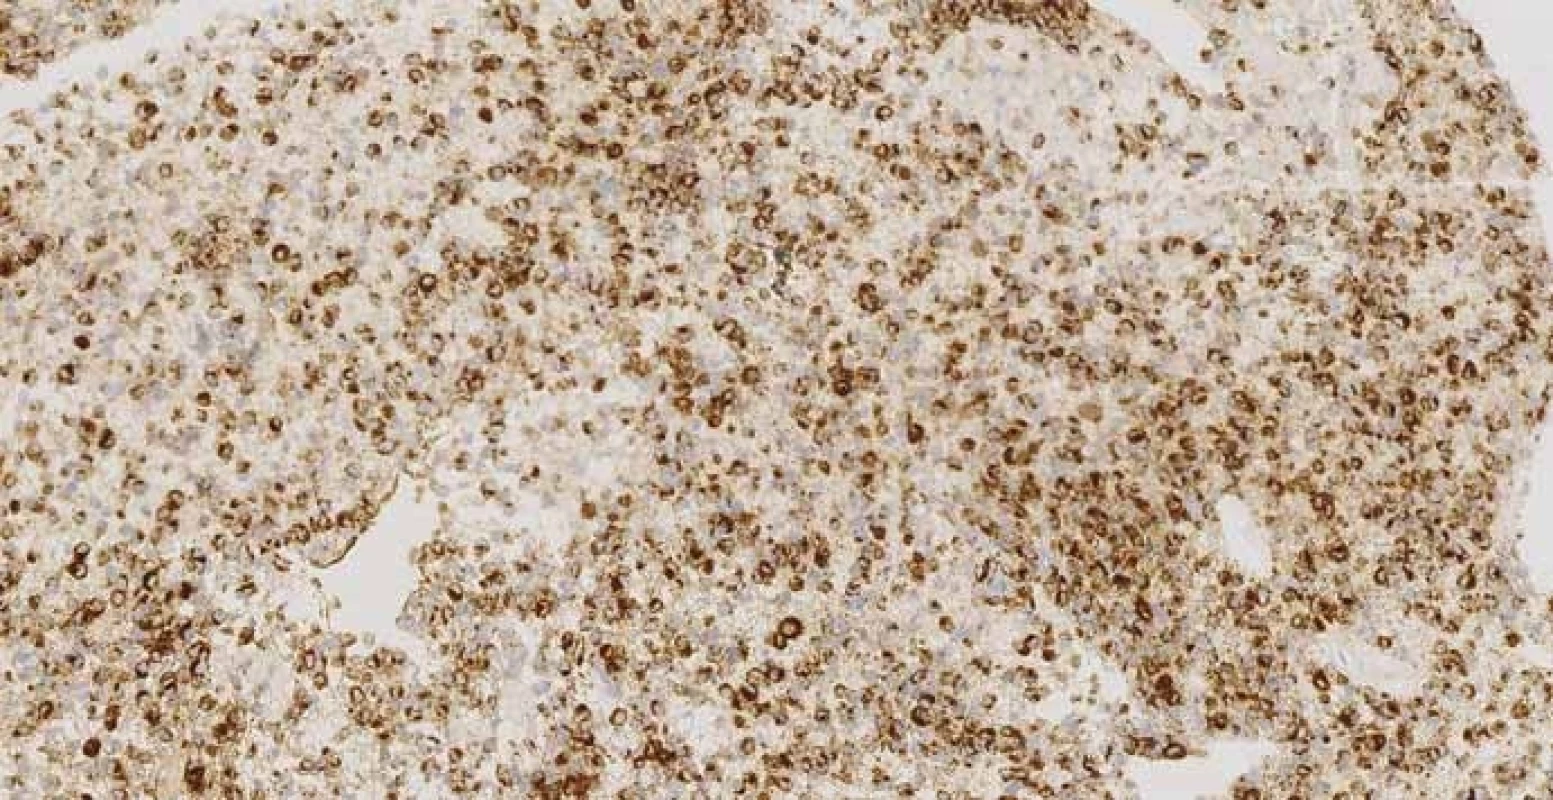 Imunohistochemistry – strong granular cytoplasmic positivity of HMB-45 (melanocytic differentiation marker) in 80% of malignant cells in pancreatic biopsy obtained via EUS-FNA, magnification ×200. <br>Obr. 5. Imunohistochemie – silná granulární cytoplazmatická pozitivita HMB-45 (marker melanomové diferenciace buněk) v 80 % maligních buněk z biopsie pankreatu, zvětšeno 200×.